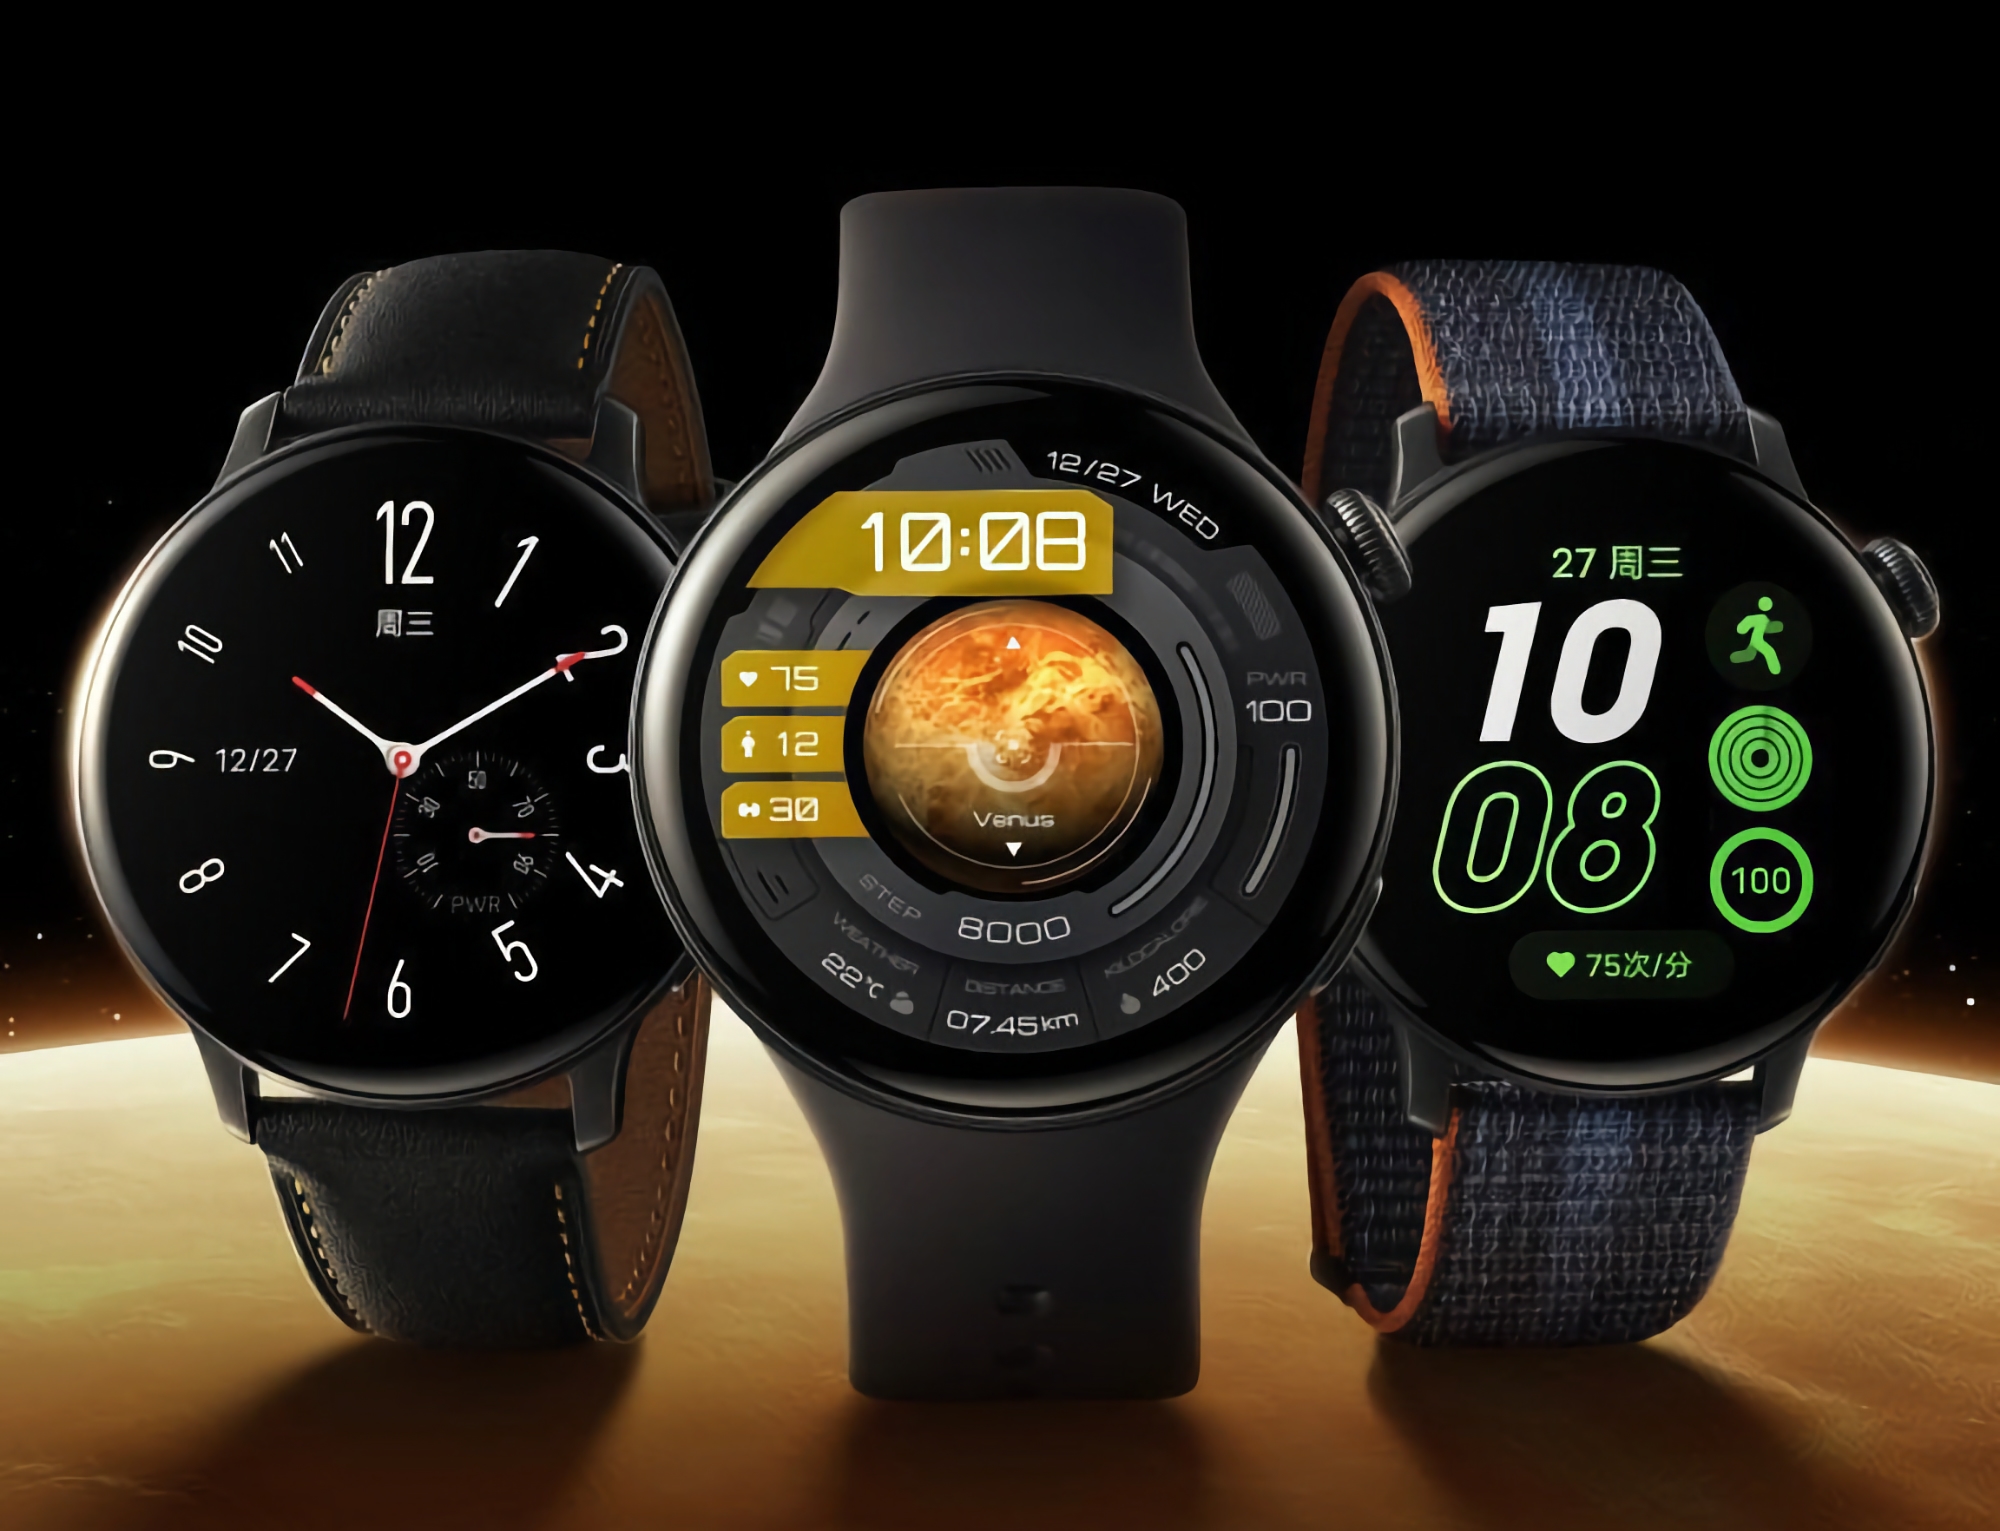 Nie czekając na prezentację: vivo pokazało wysokiej jakości rendery smartwatcha iQOO Watch